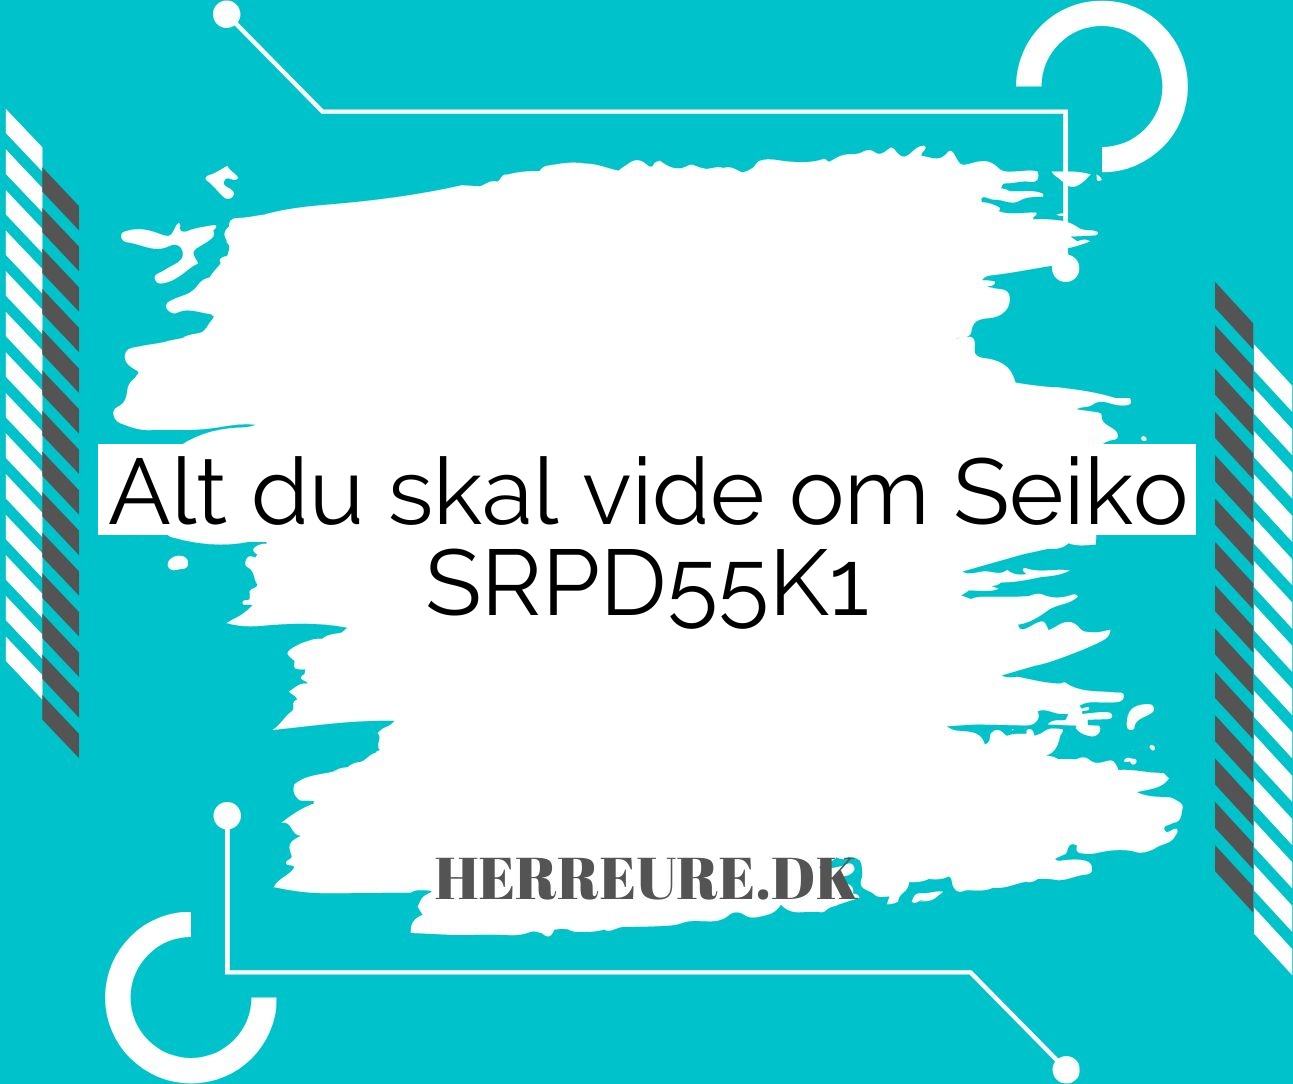 Seiko SRPD55K1 i detaljer